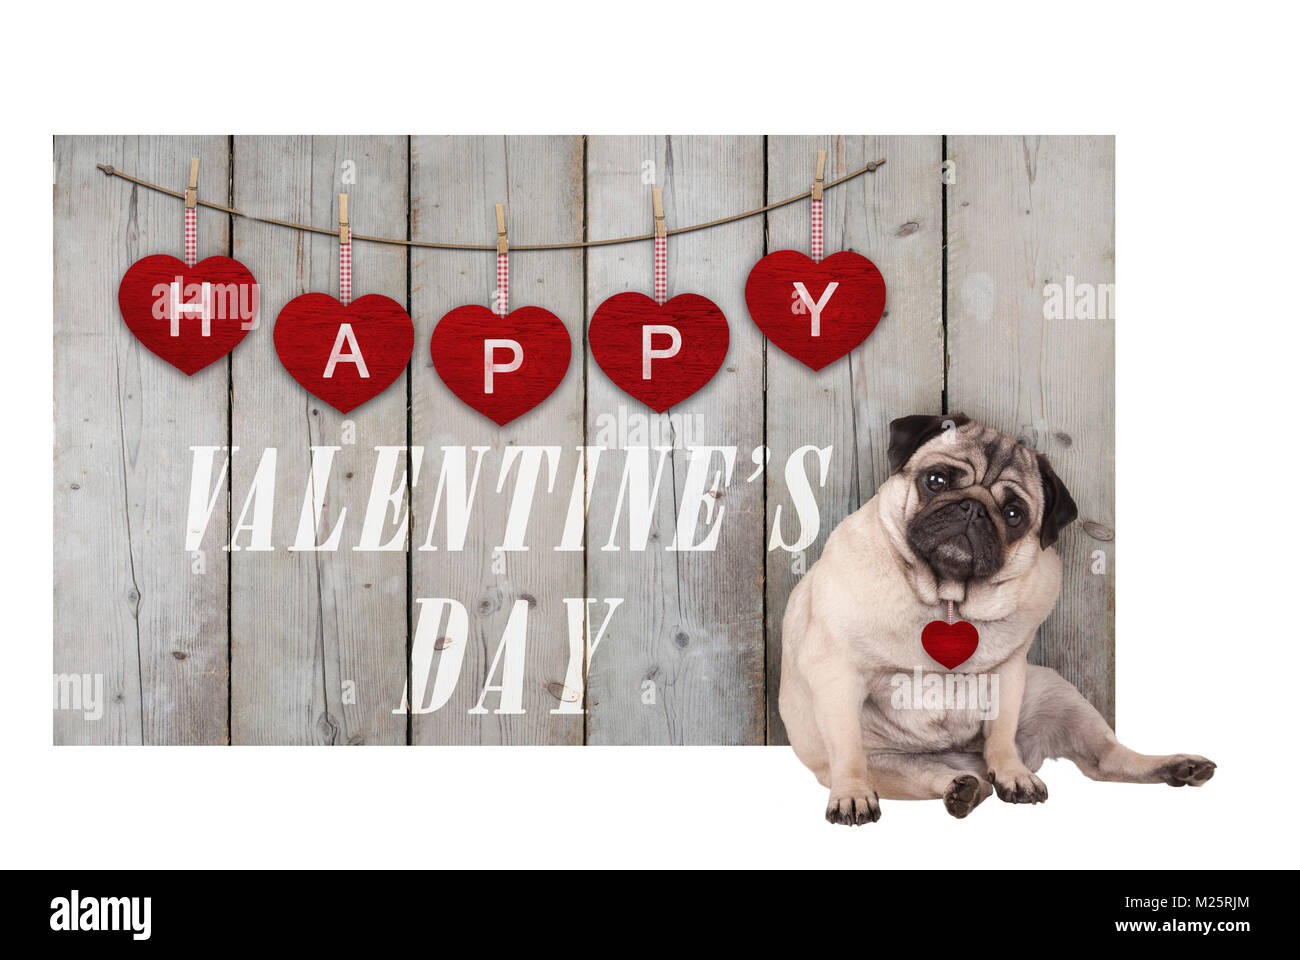 Cute puppy pug chien assis à côté de clôture en bois d'échafaudage utilisé bois avec coeur rouge et texte happy valentines day, isolated on white background Banque D'Images